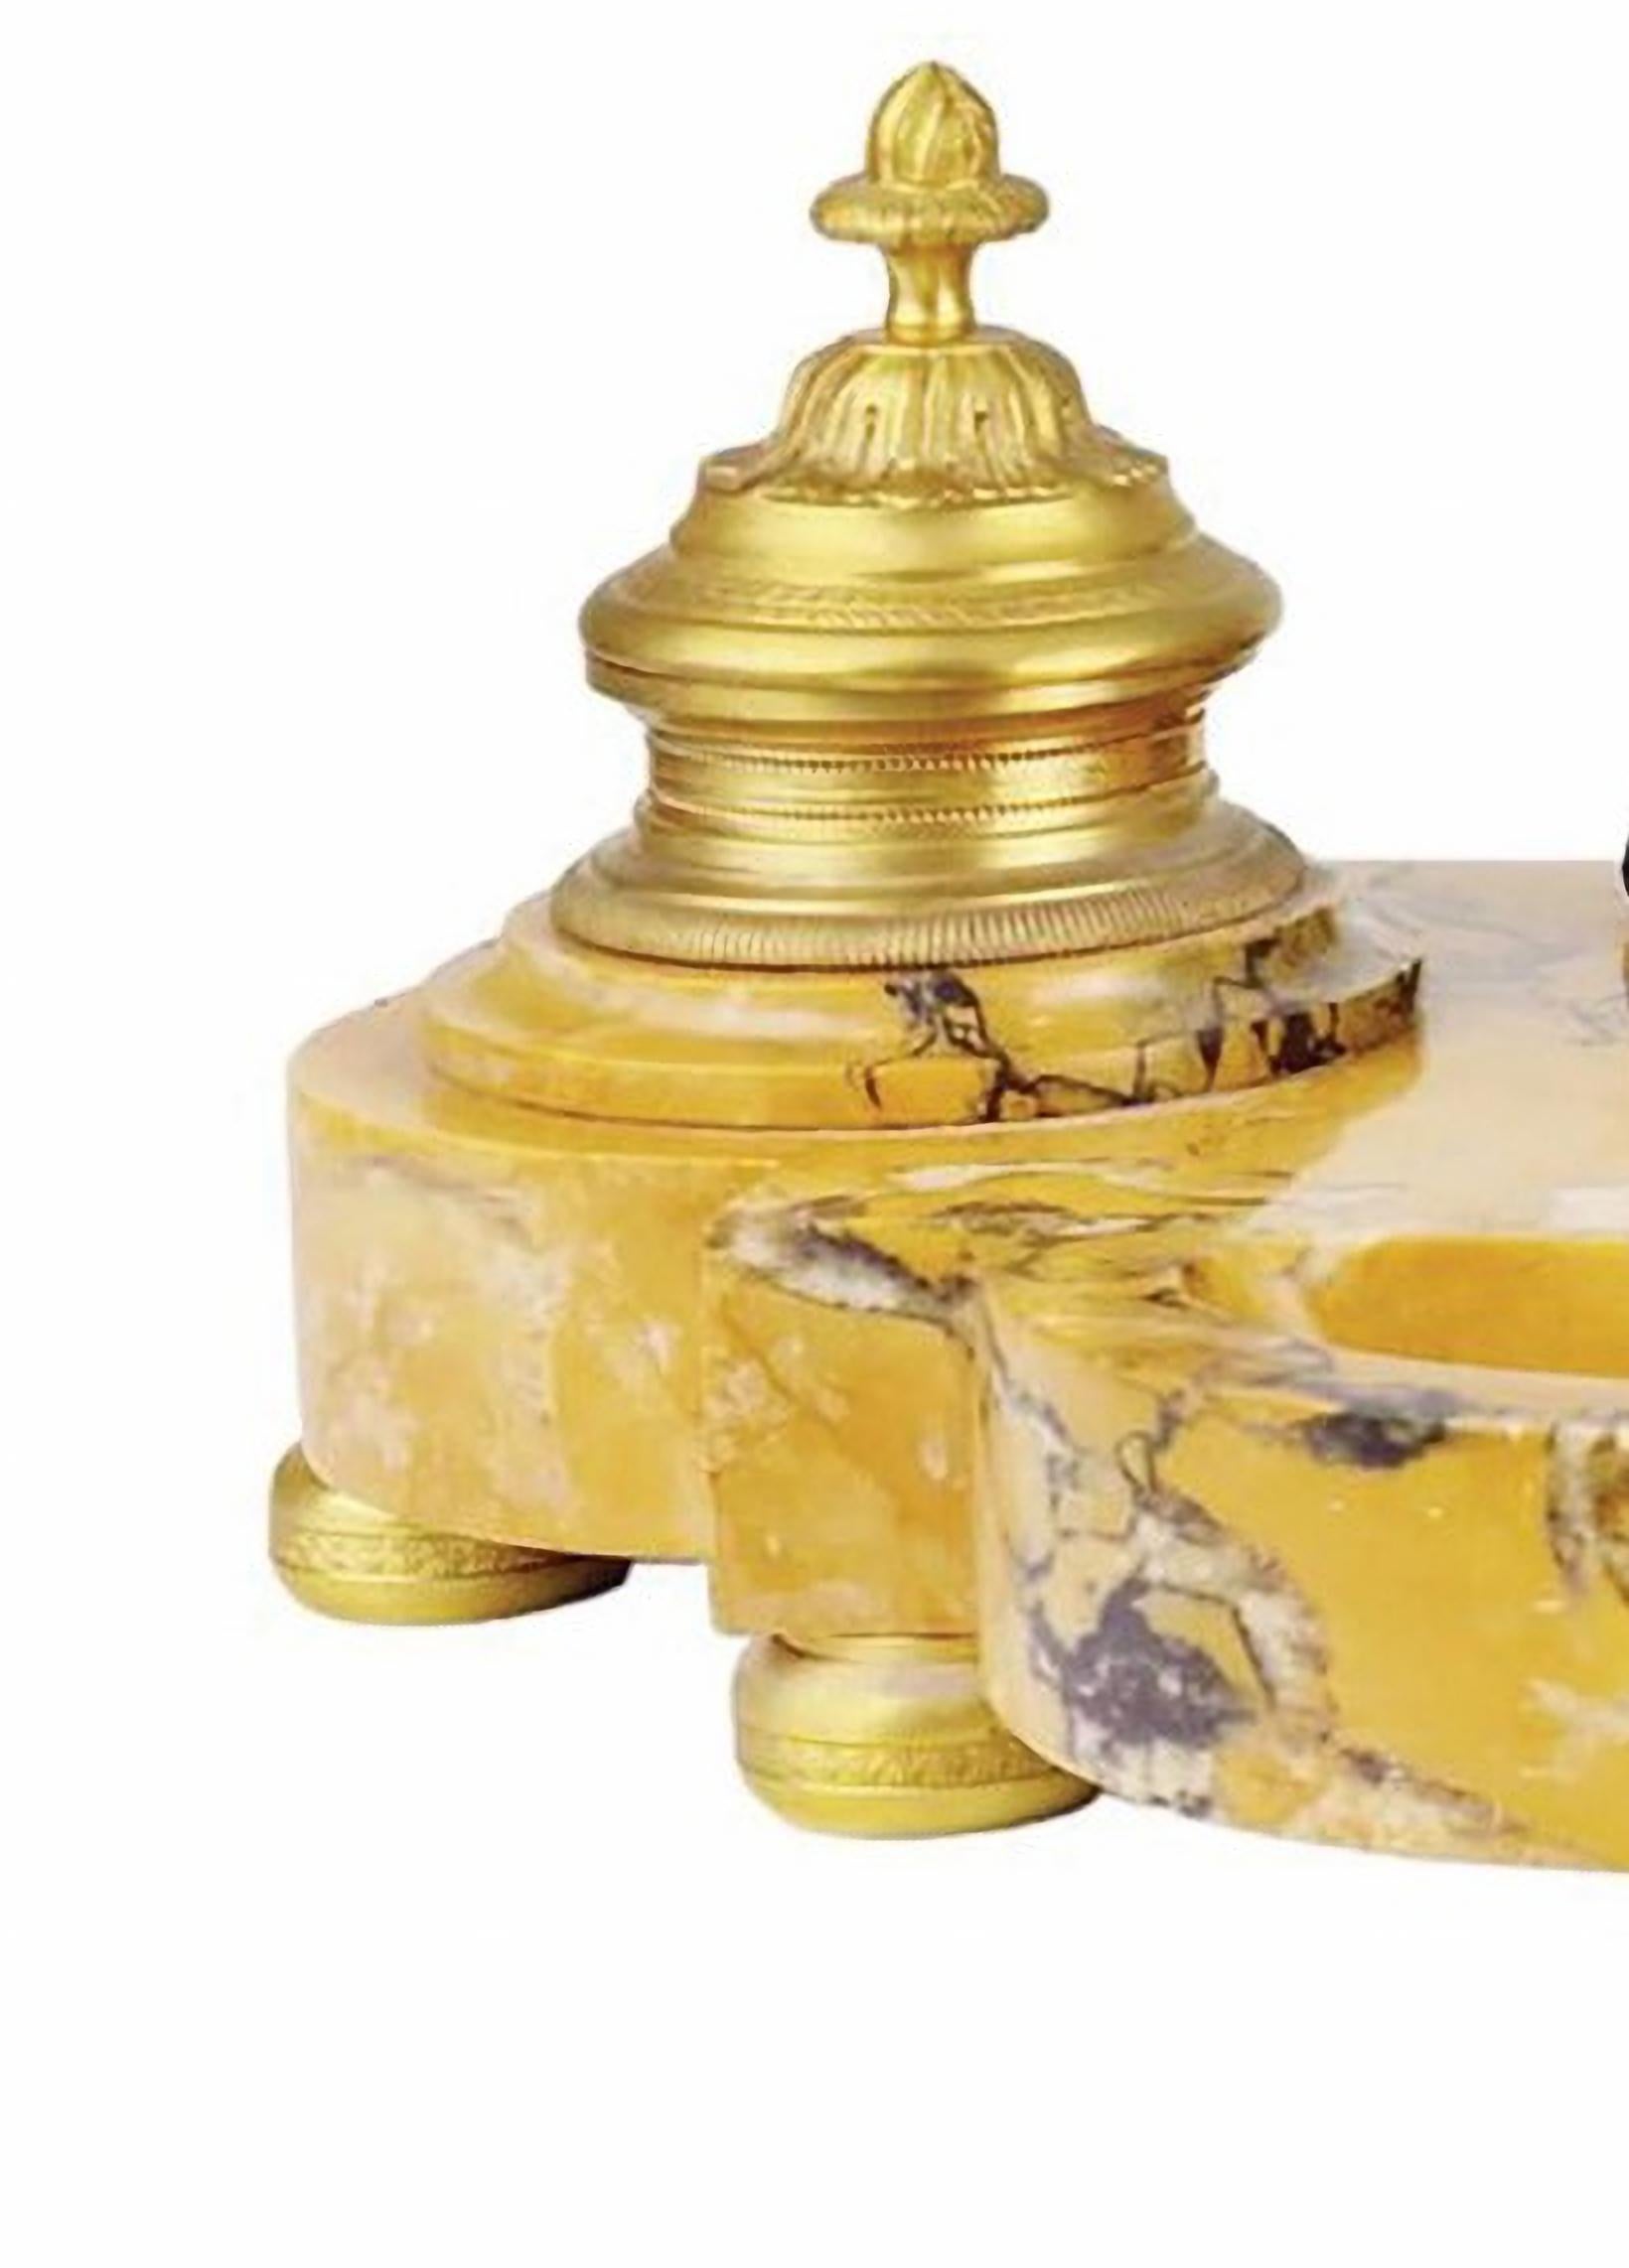 Important encrier au lion Napoléon III, 19e siècle
En marbre jaune de Sienne veiné, centré d'une tête de lion à la longue crinière en bronze à patine sombre, entouré de deux encriers en bronze doré finement ciselés tenant un petit réservoir en